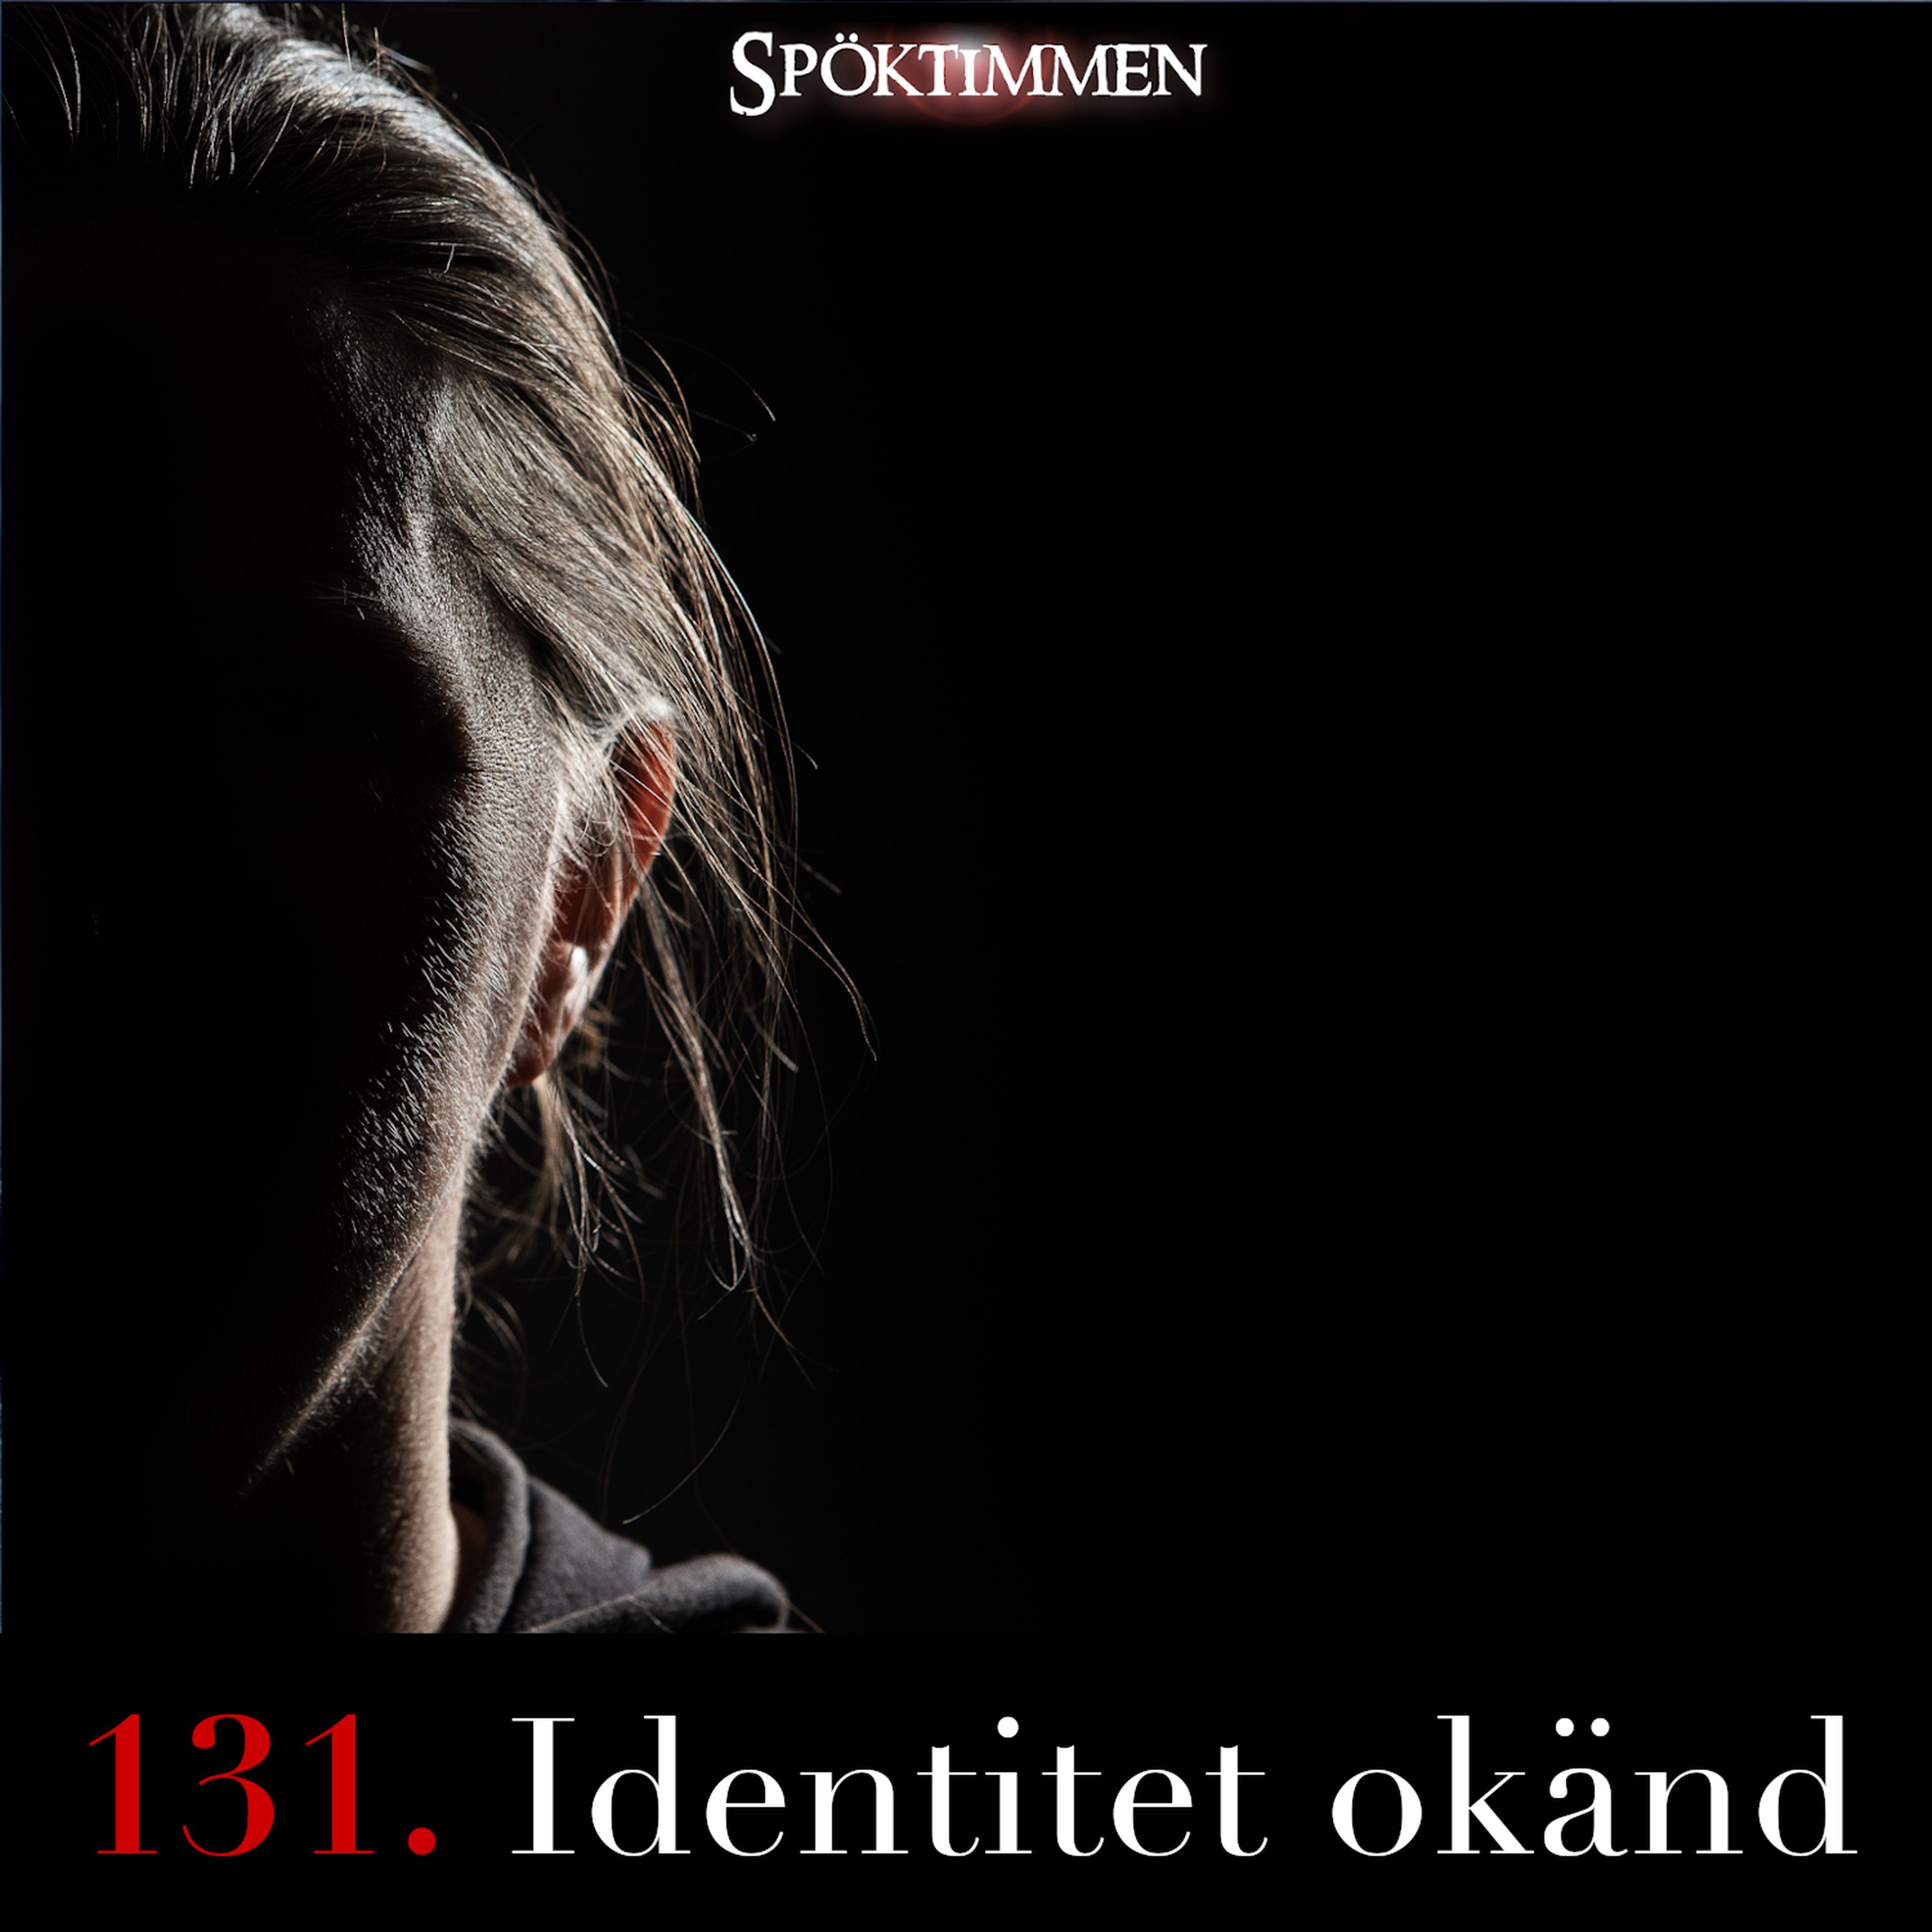 131. Identitet okänd